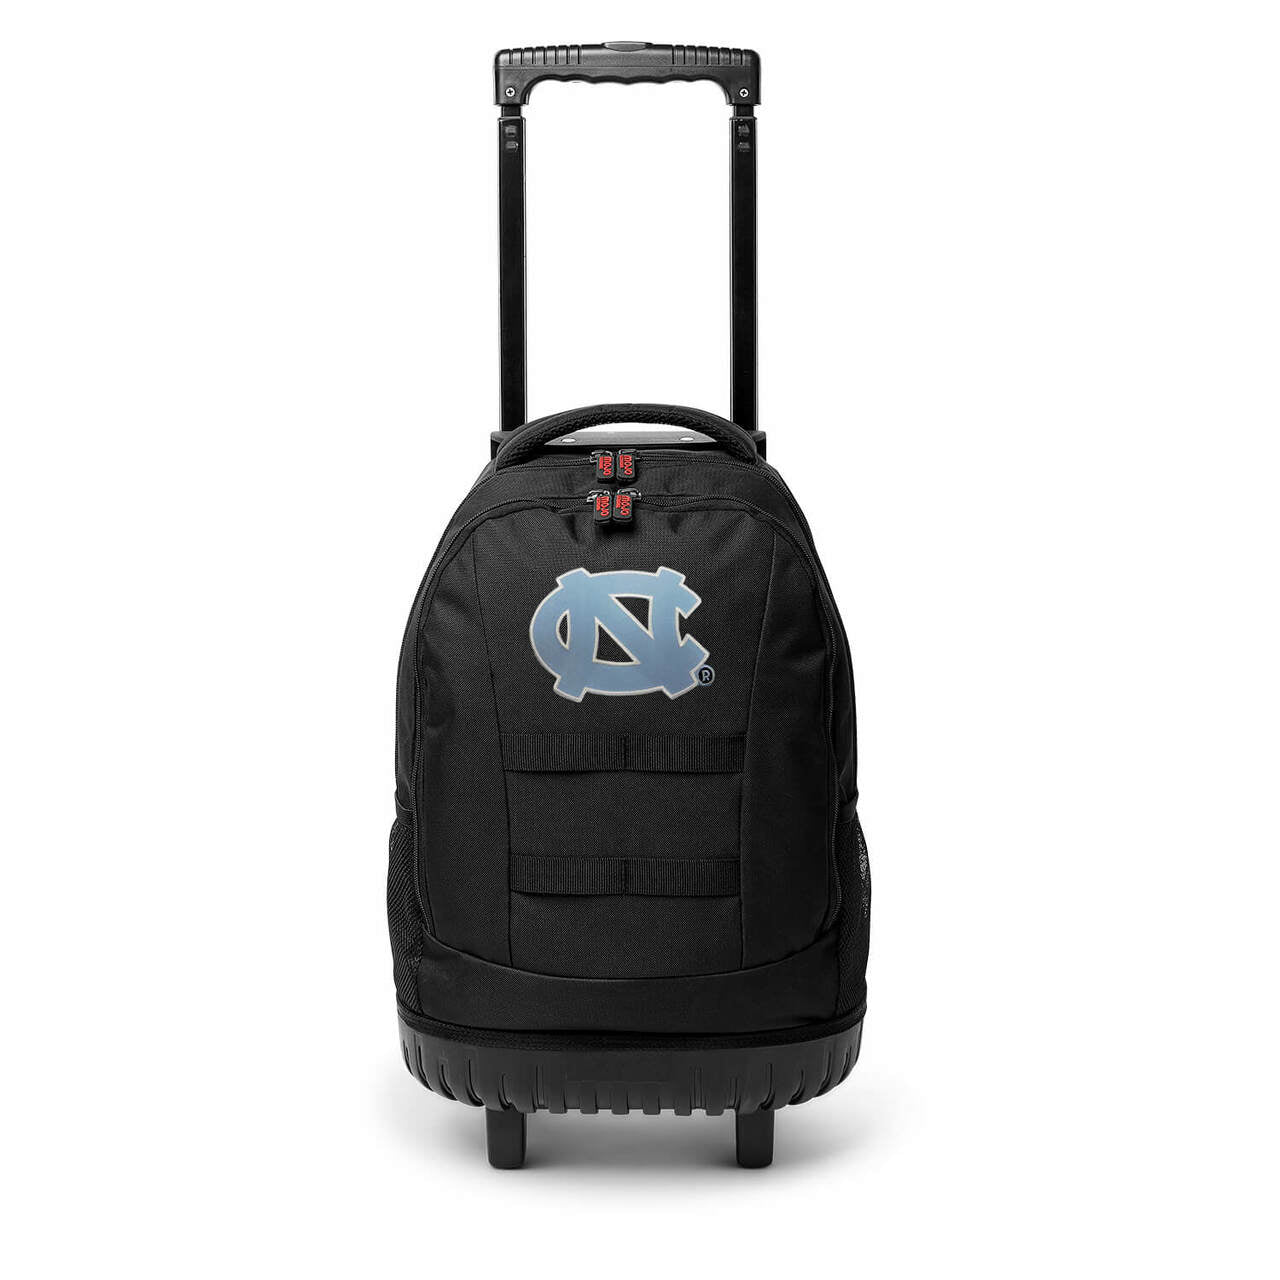 UNC Tar Heels 18" Wheeled Tool Bag